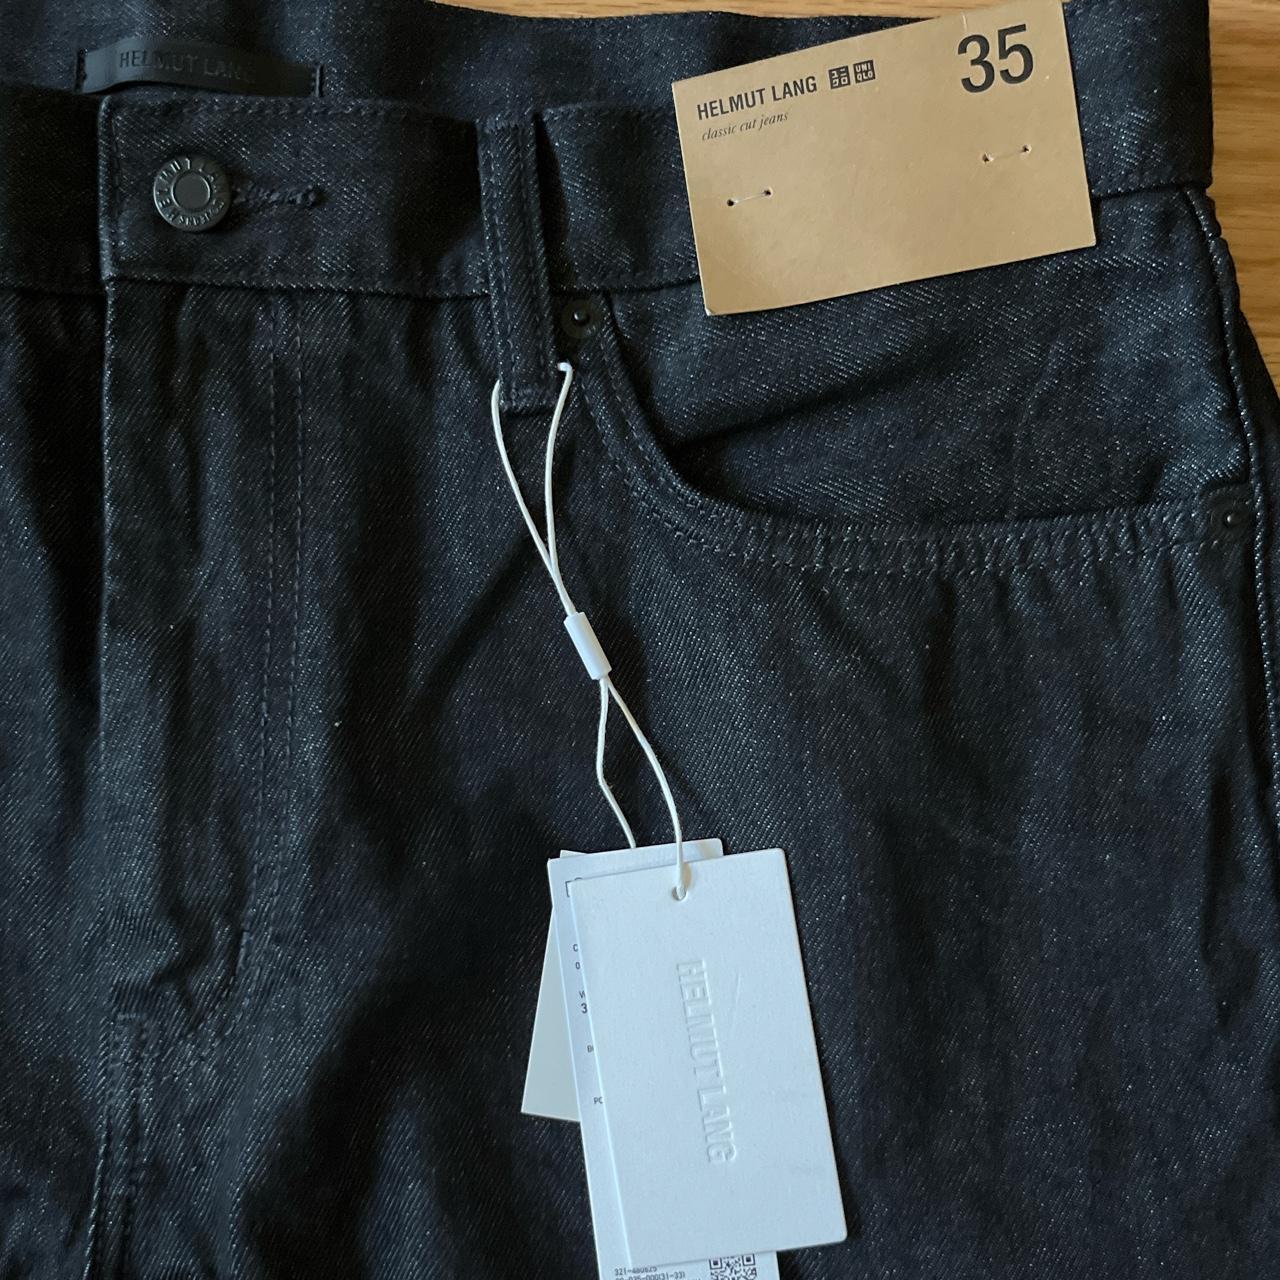 Helmut Lang Men's Jeans